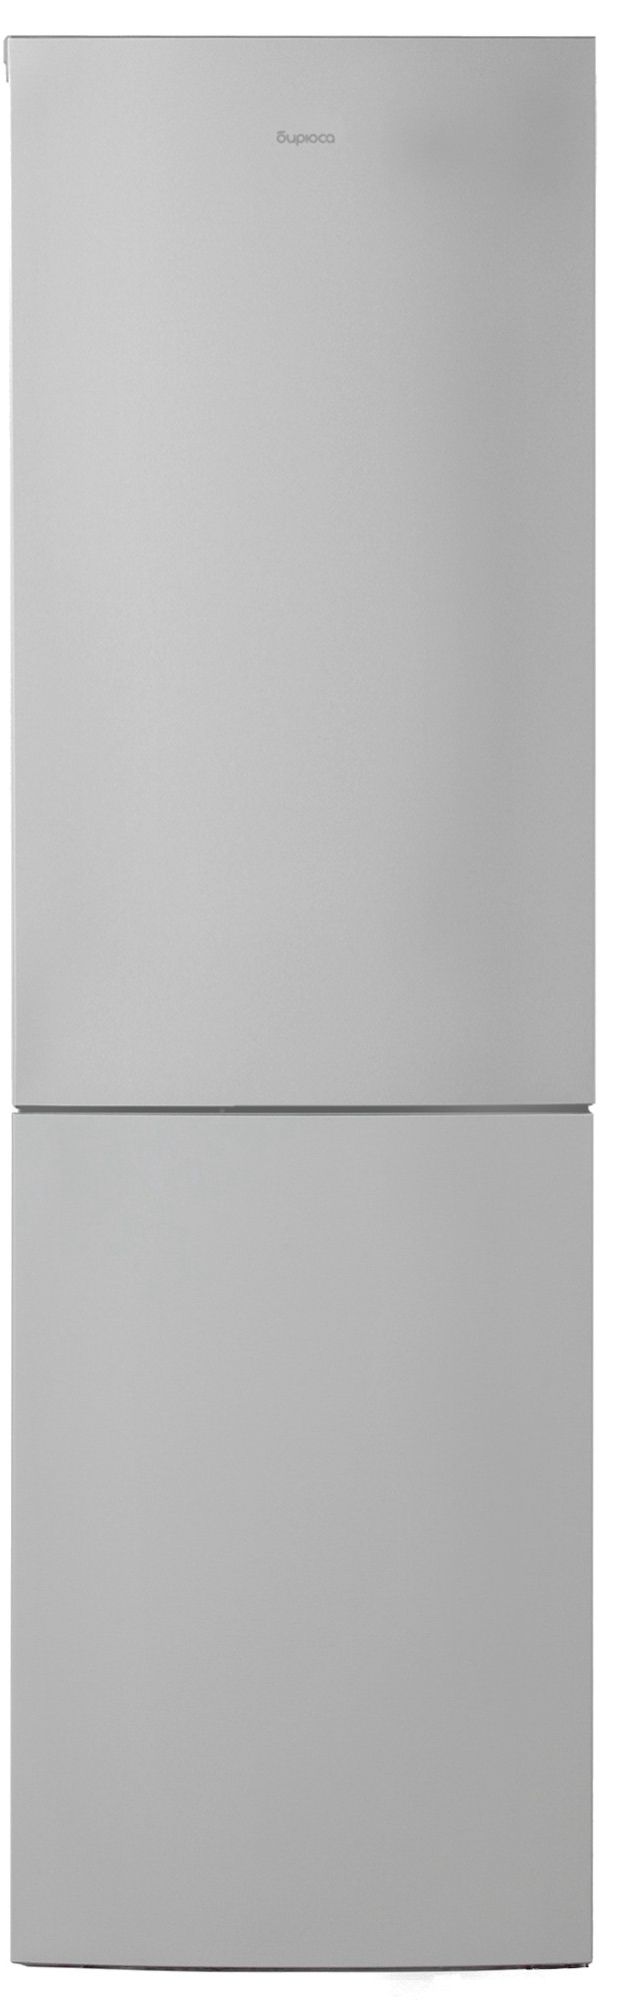 холодильник бирюса 6049, купить в Красноярске холодильник бирюса 6049,  купить в Красноярске дешево холодильник бирюса 6049, купить в Красноярске минимальной цене холодильник бирюса 6049